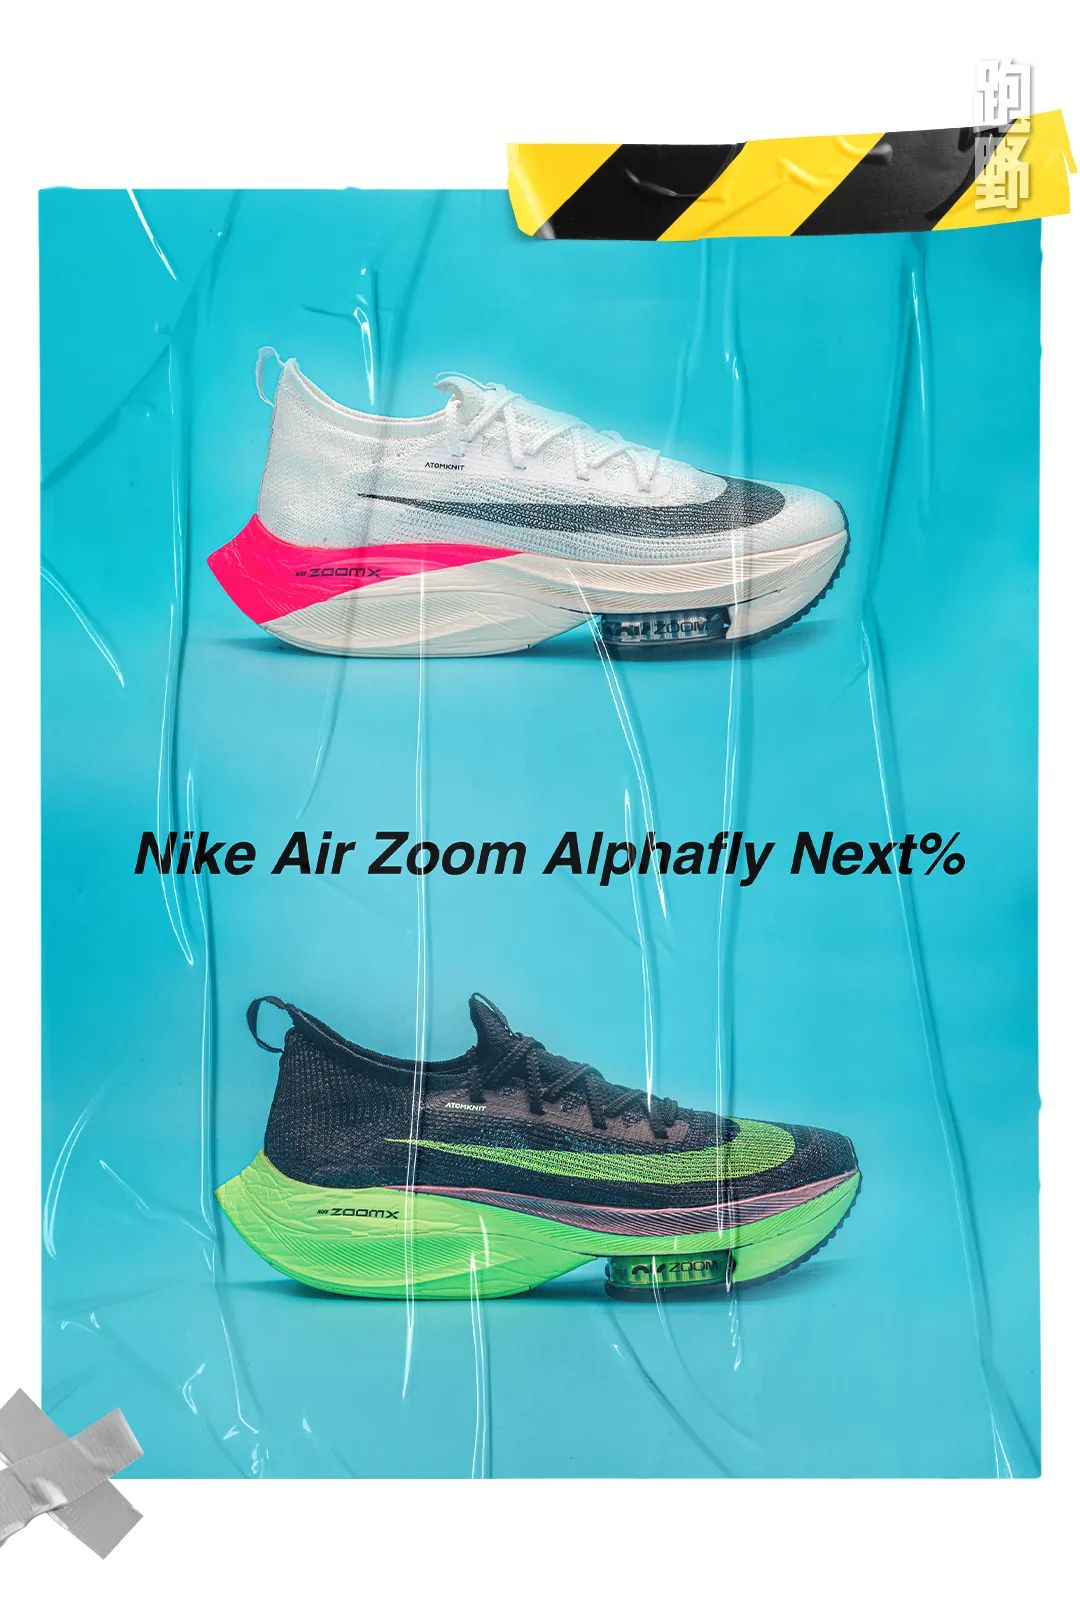 跑野装备秀 | adidas能靠adios Pro能打败Nike吗